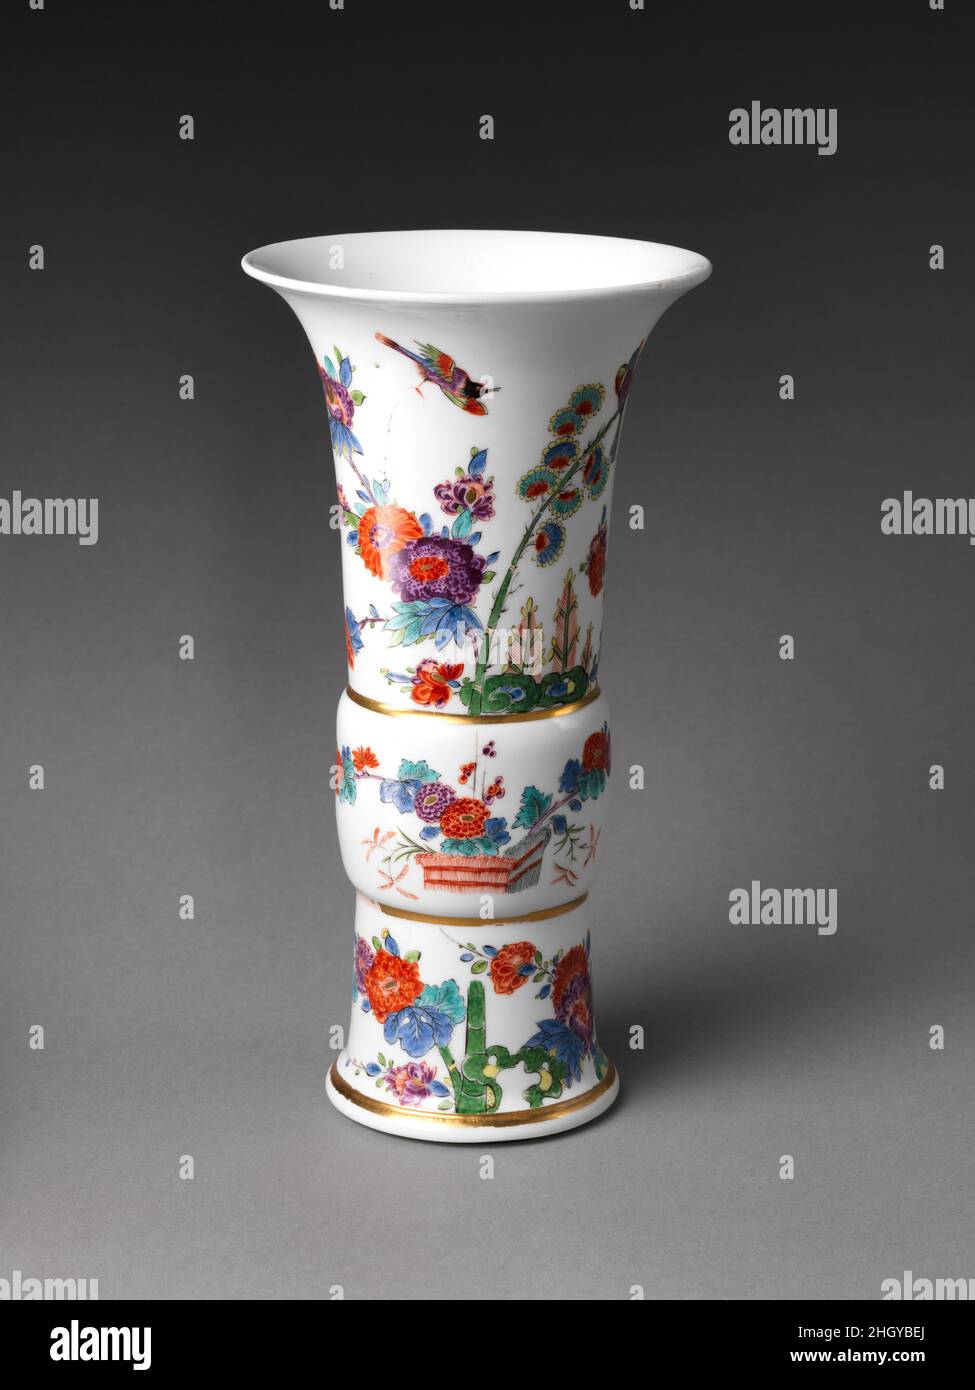 Vase avec fleurs et oiseaux (un de deux) 1733 Meissen Manufactory allemand la forme de ce vase est d'origine chinoise, mais la décoration combine librement des motifs chinois et japonais.Les vases peuvent être datés de 1733, la seule année au cours de laquelle la marque sur la base a été utilisée.Vase avec fleurs et oiseaux (un de deux).Allemand, Meissen.1733. Porcelaine à pâte dure peinte avec des émaux colorés sous un vernis transparent.Céramique-porcelaine Banque D'Images